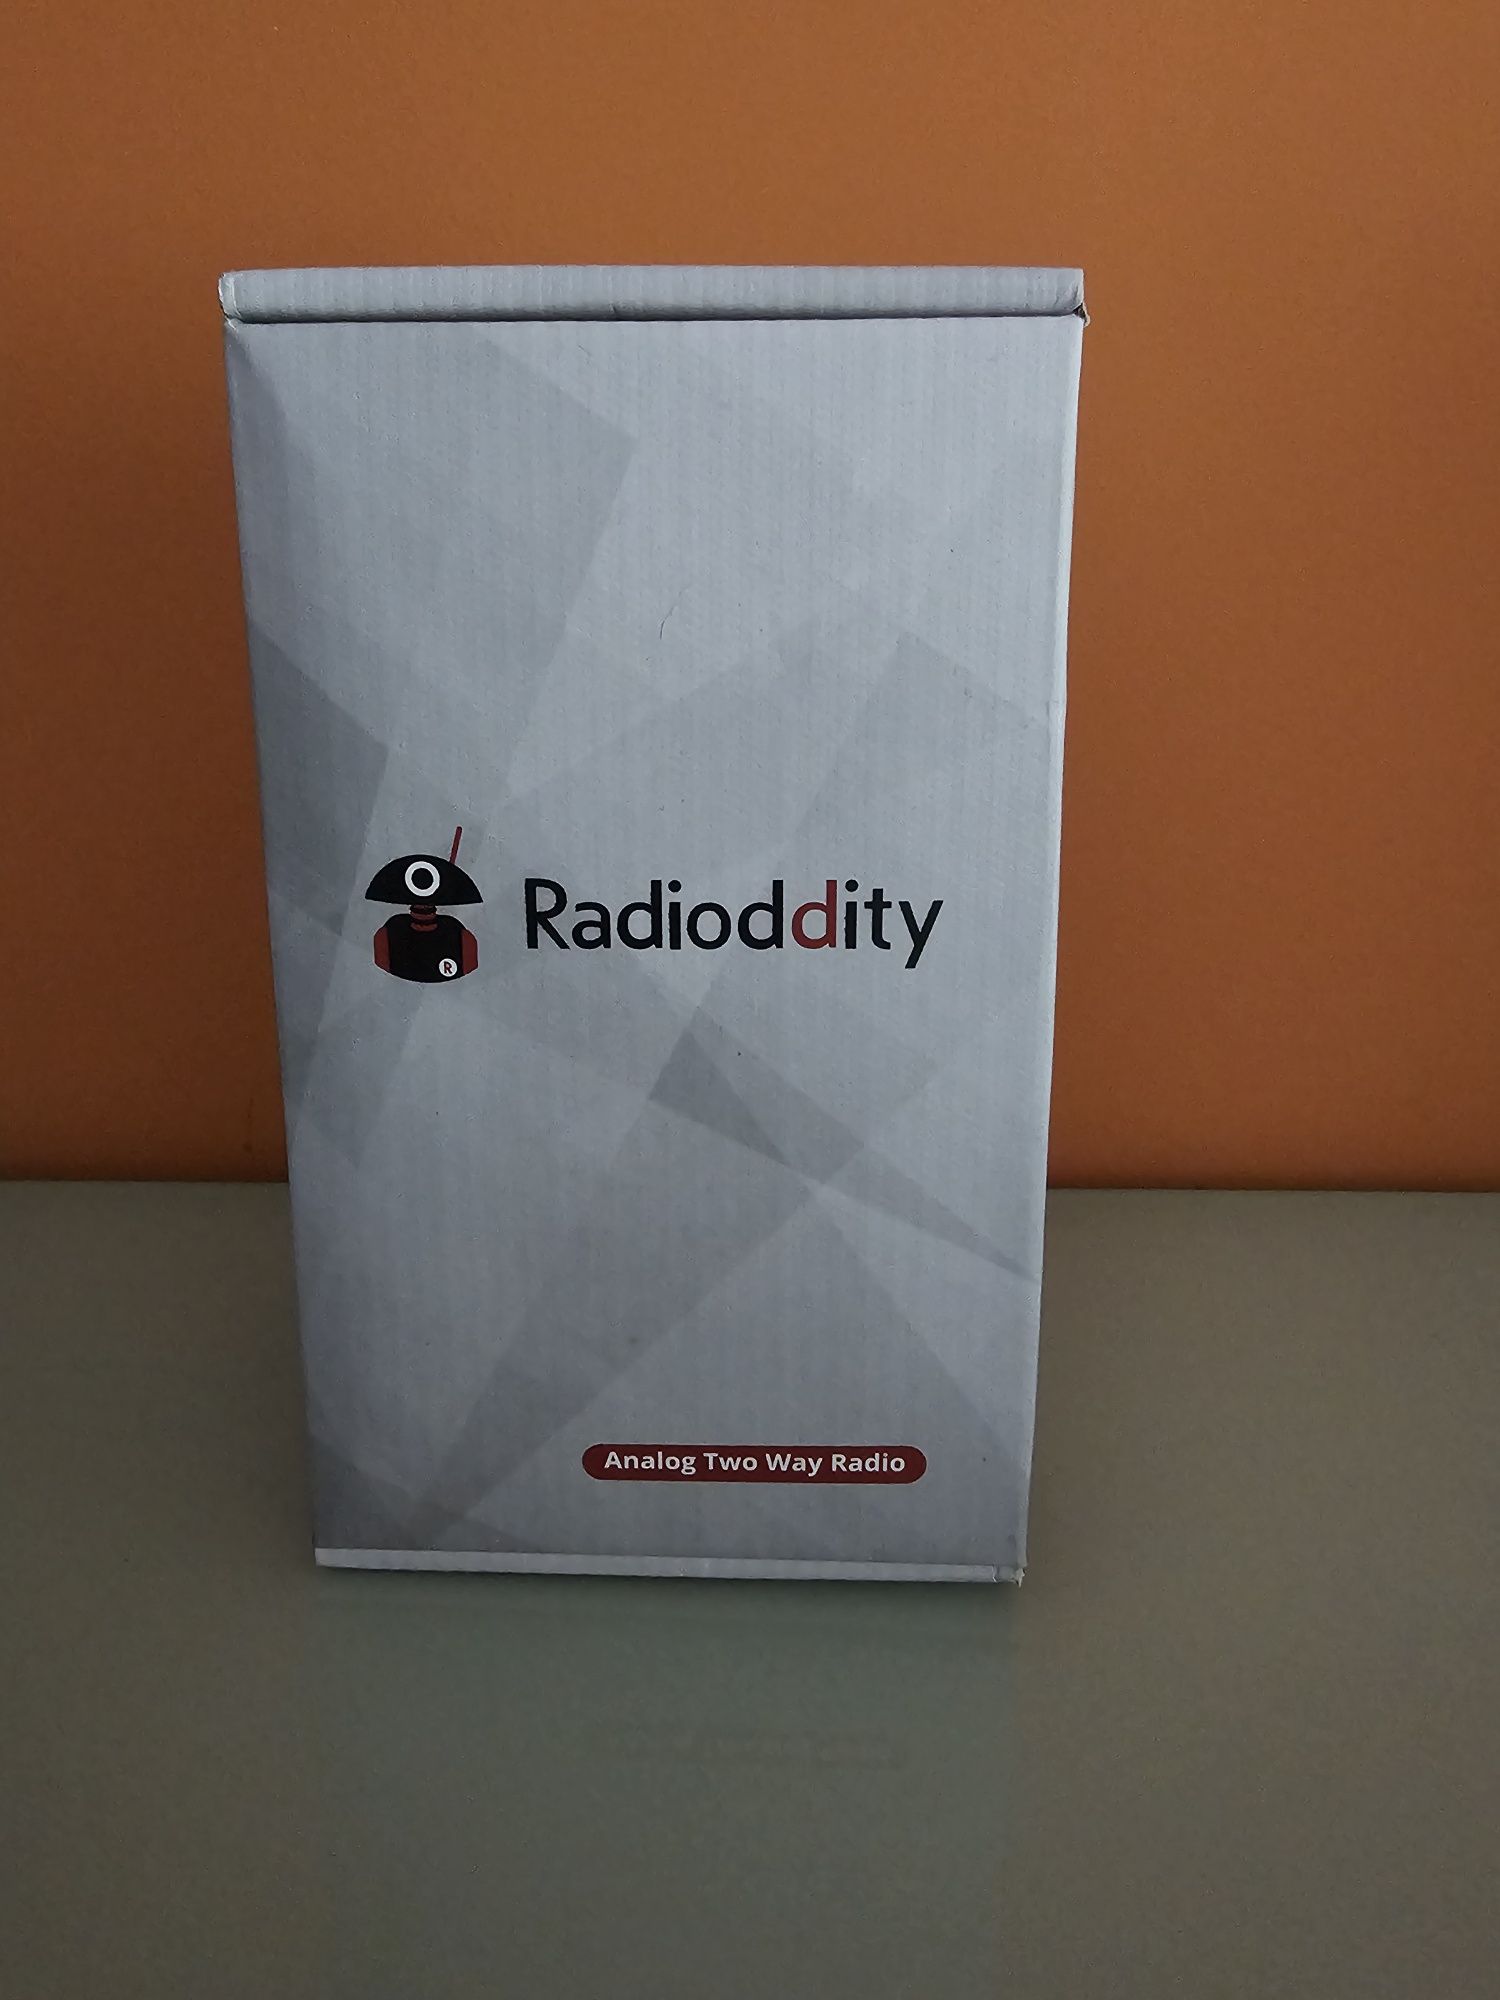 Rádio Radioddity GA-510 VHF UHF 10W potência de transmissão Rádio amad